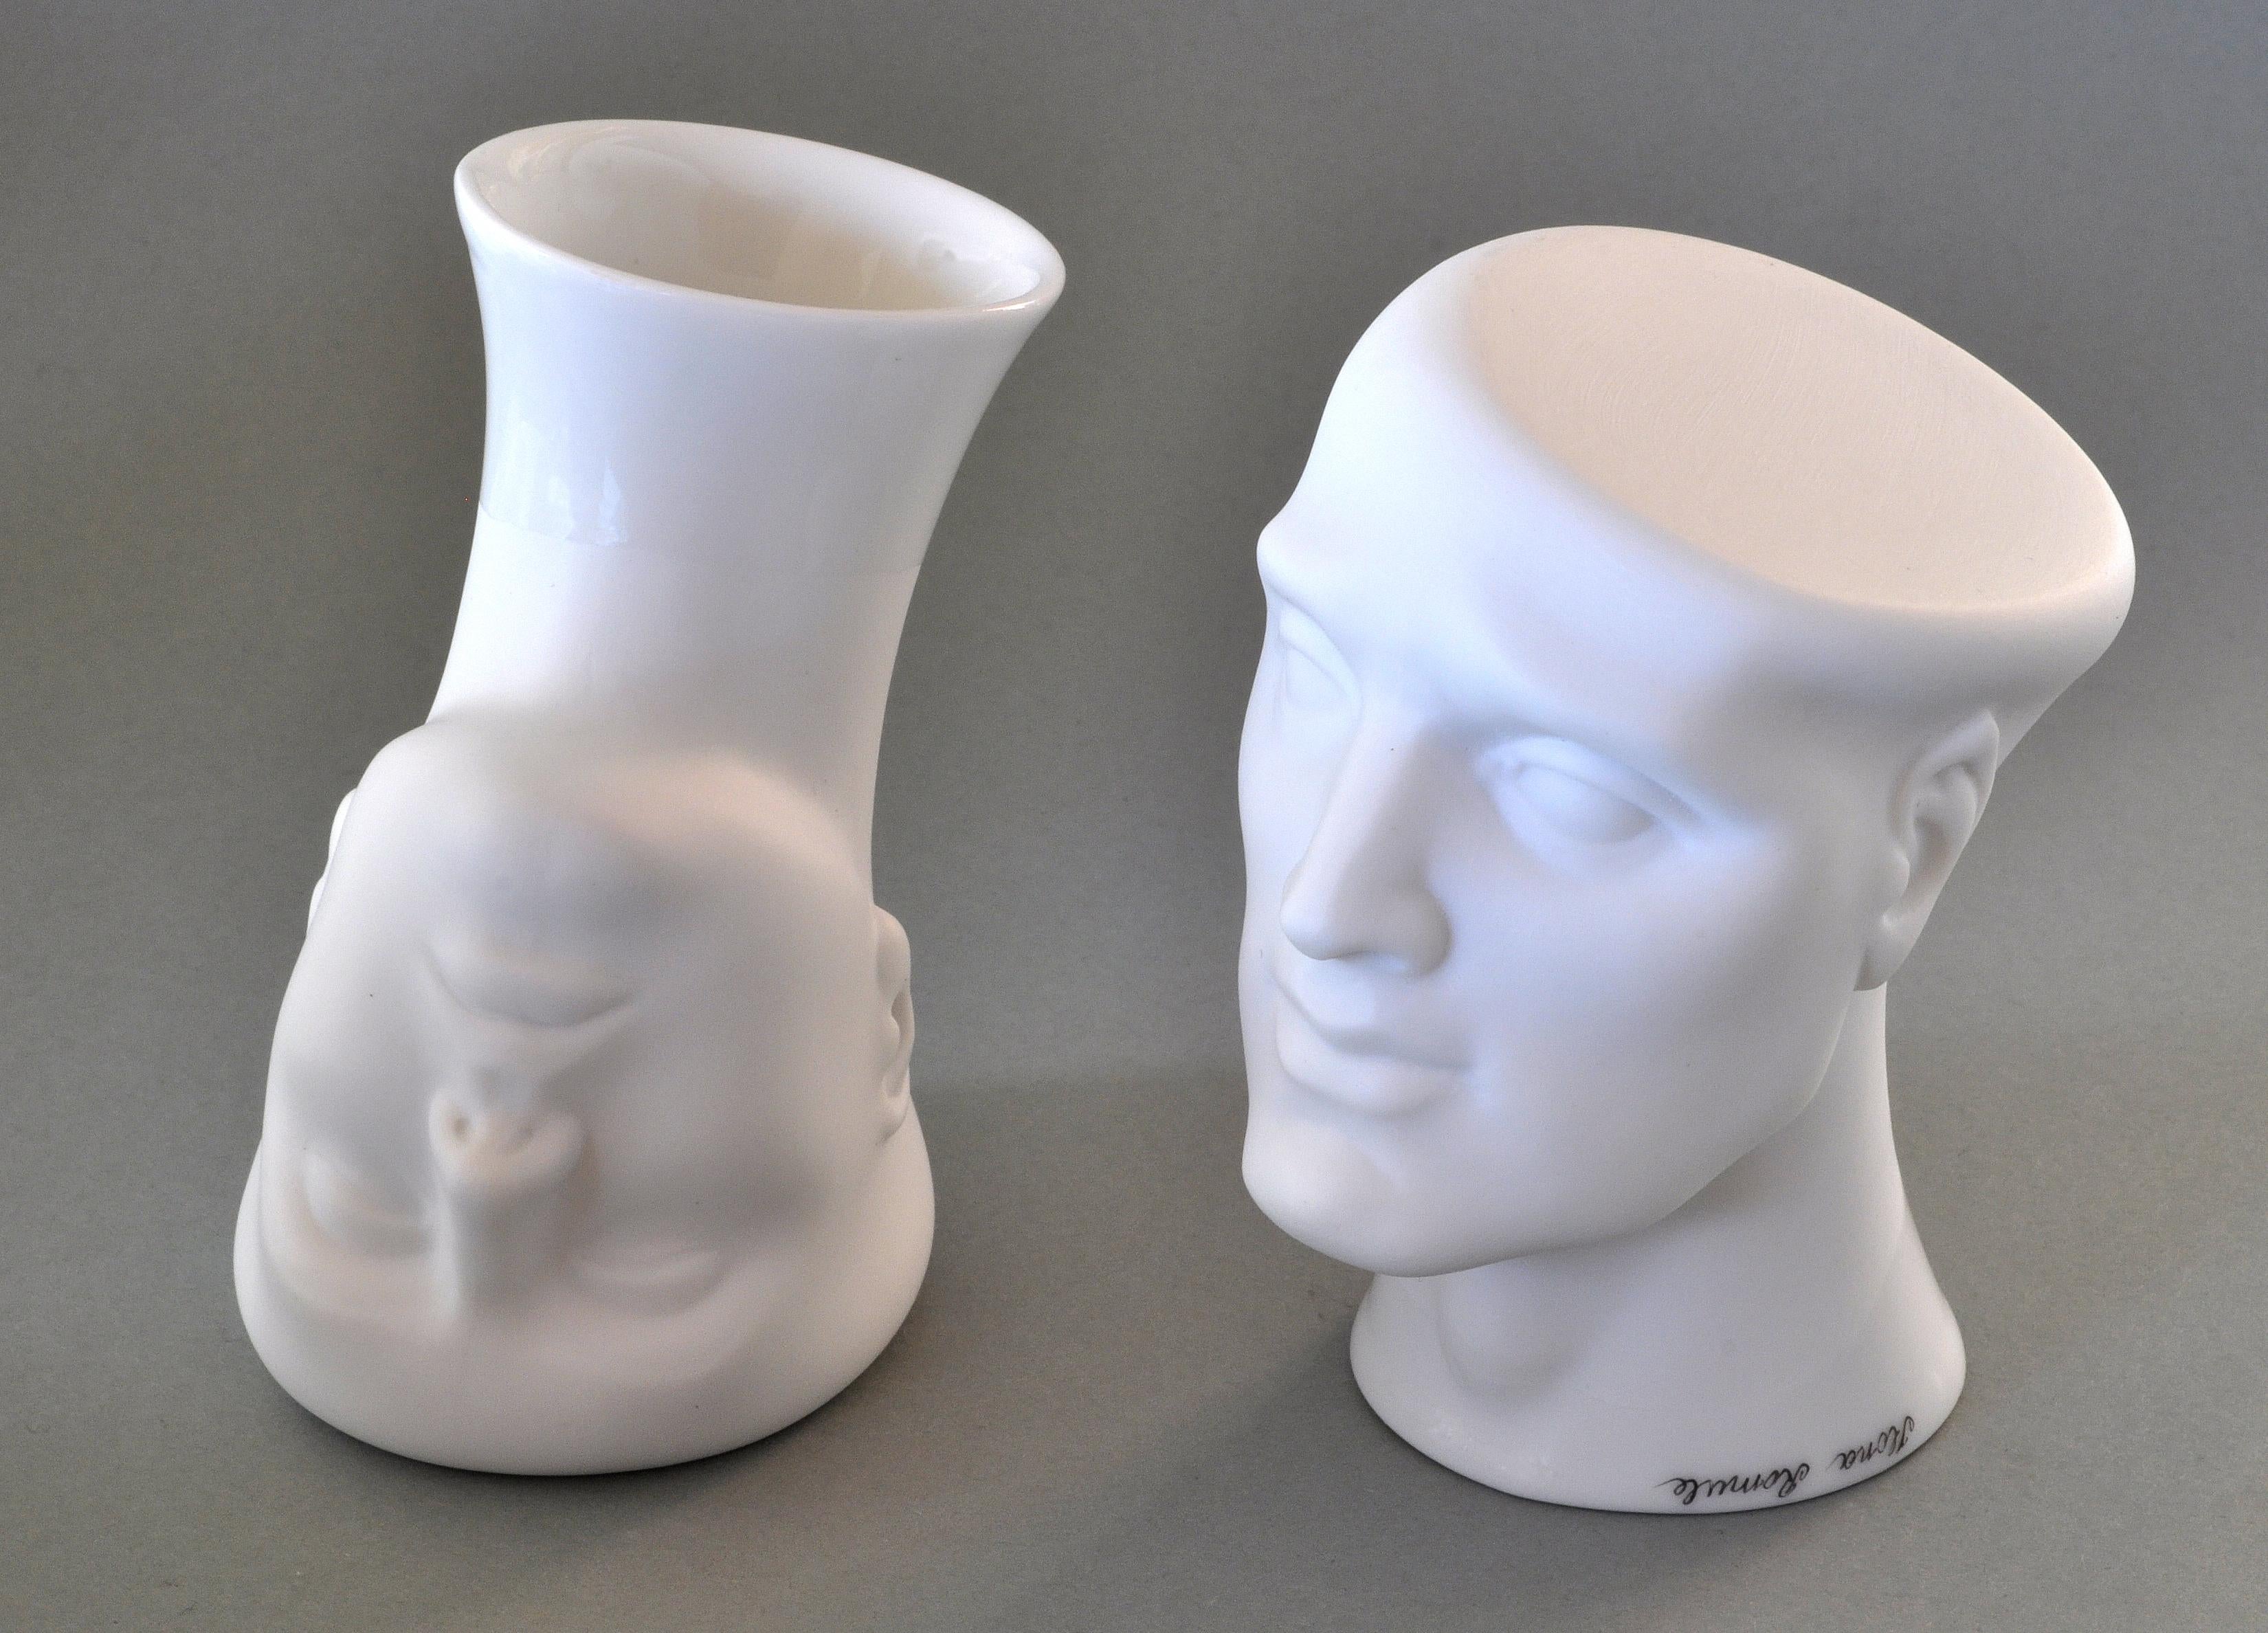 Ilona Romule Figurative Sculpture - Couple. Porcelain vases 2 x h 9 cm